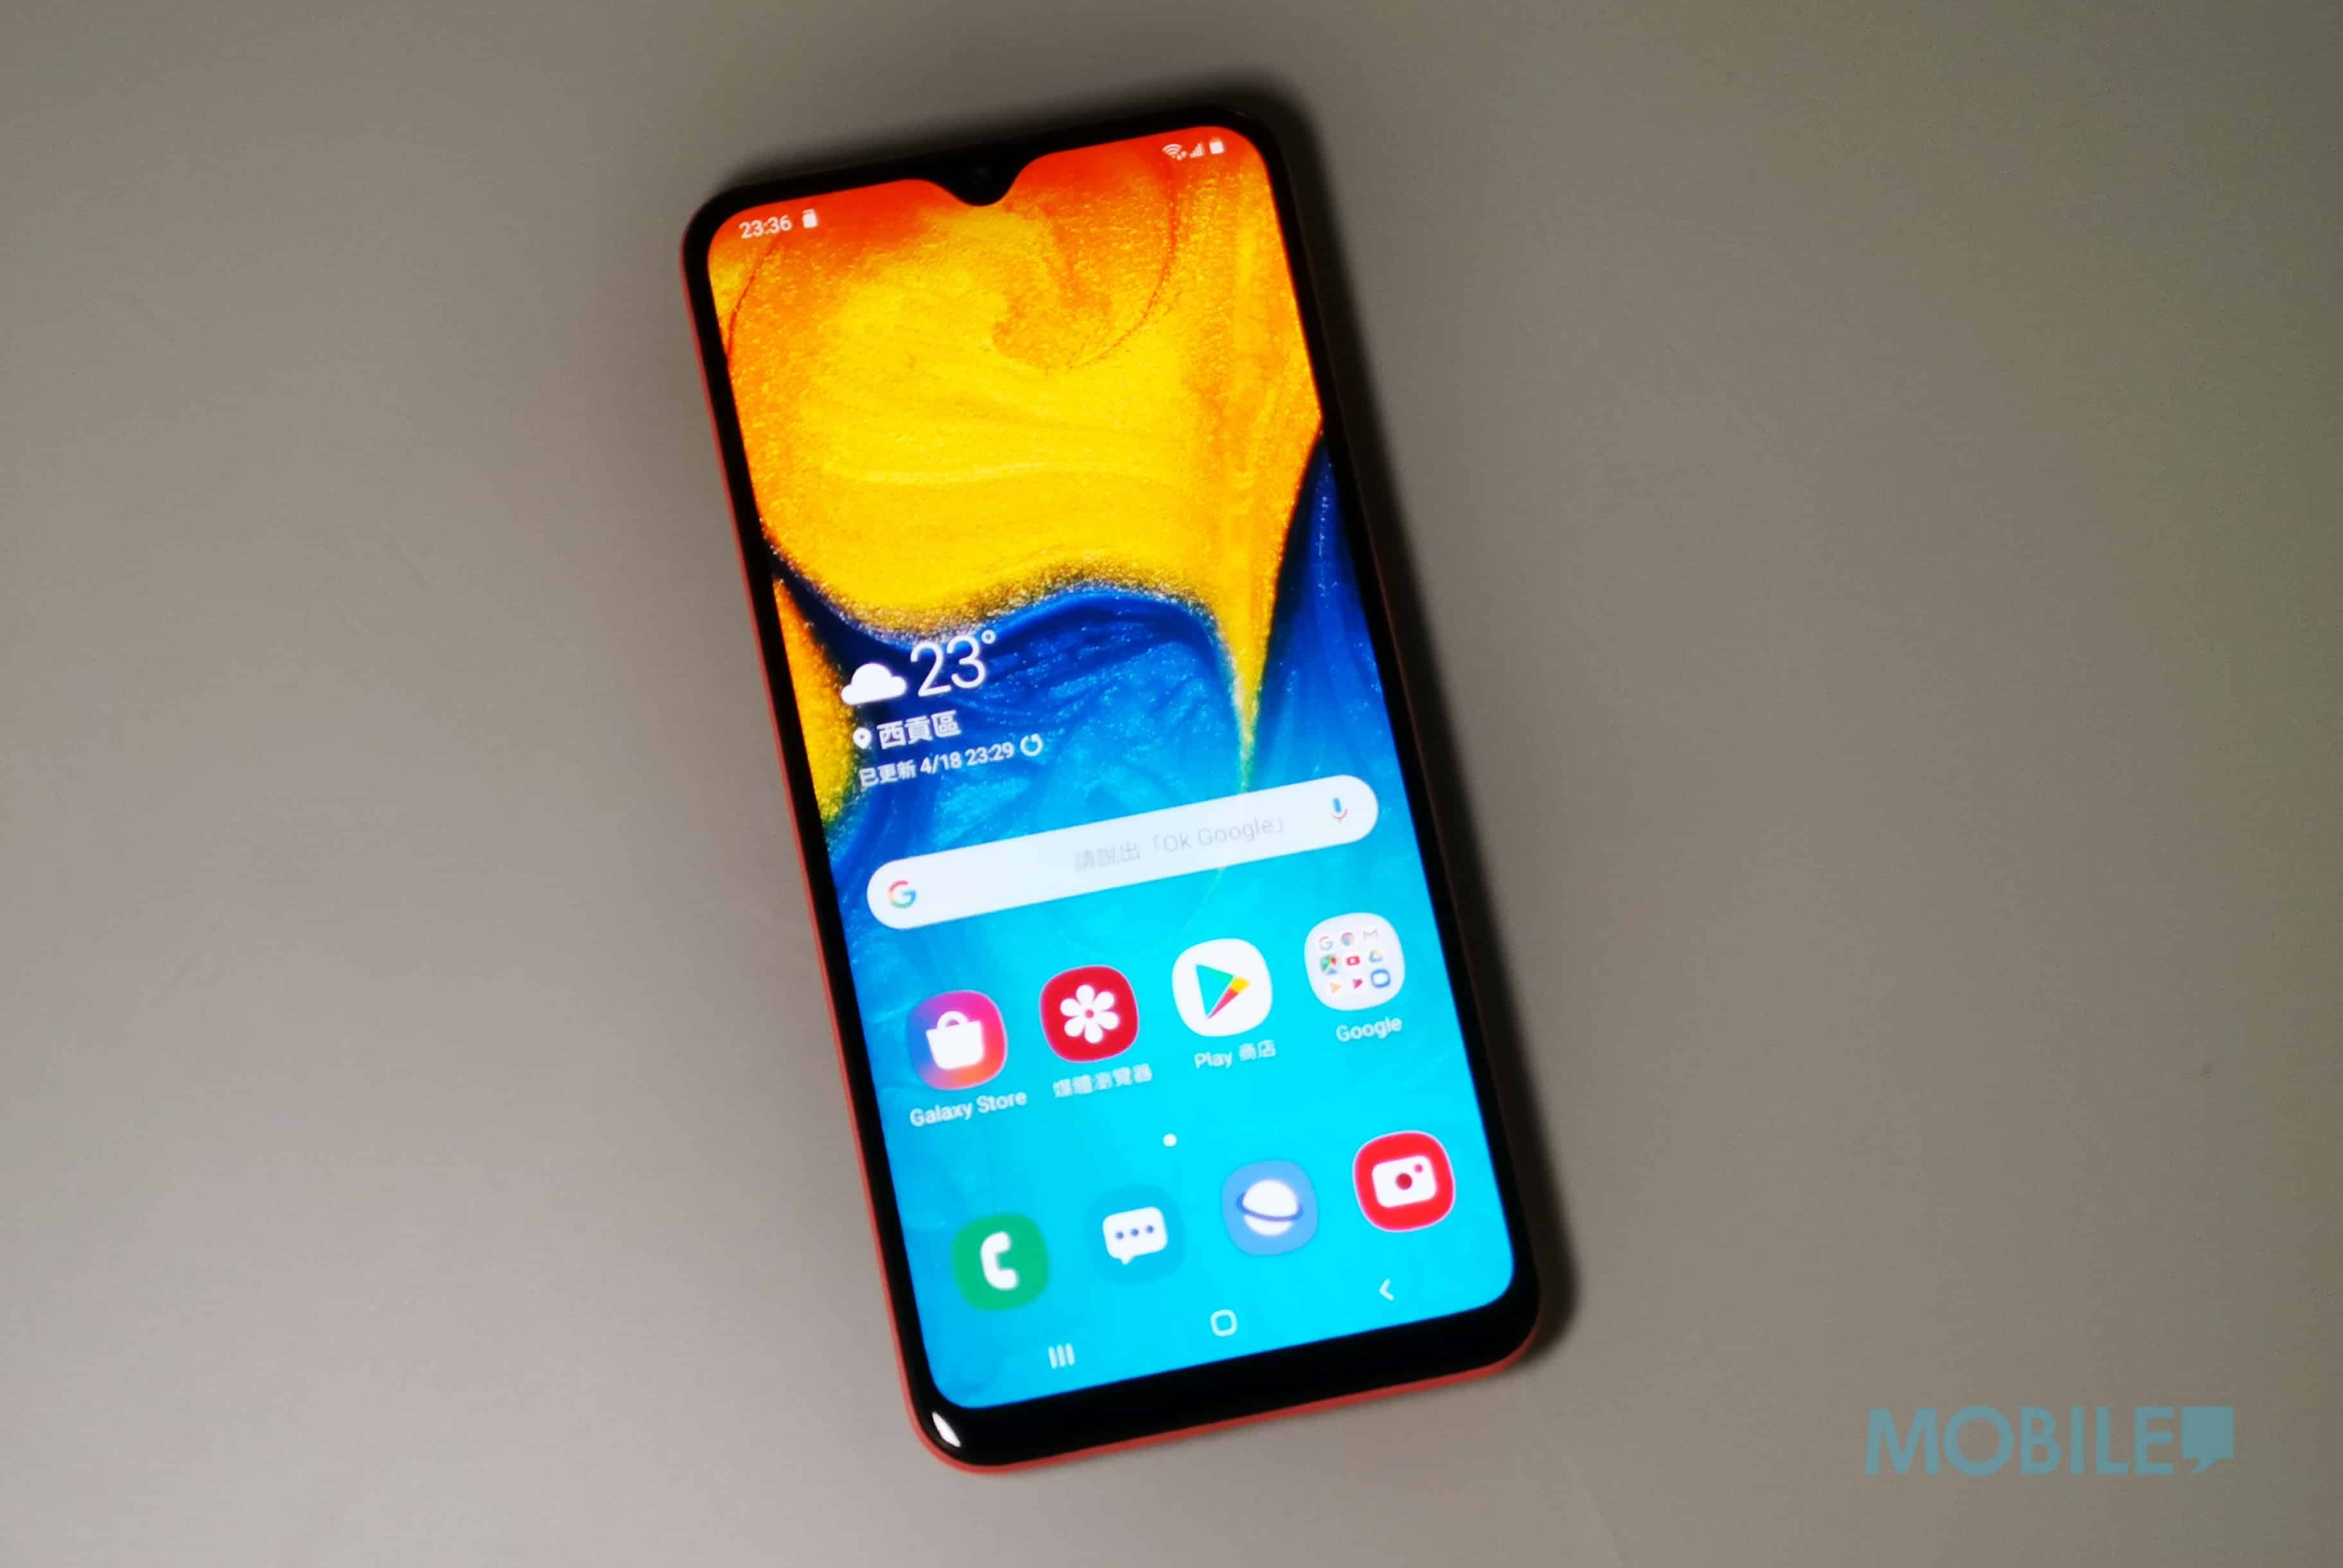 Samsung Galaxy A20 價錢 Price、規格及評測：2019 年最抵玩 NFC 入門機 - MobileMagazine